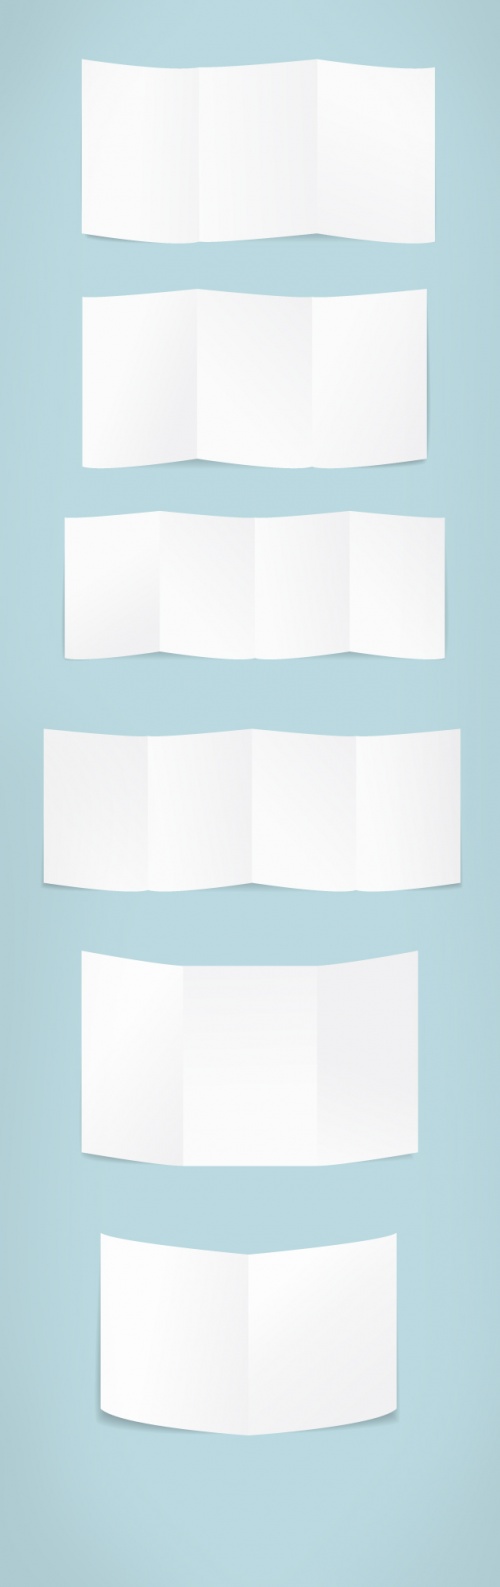 Designtnt - Folded Paper Vector Set